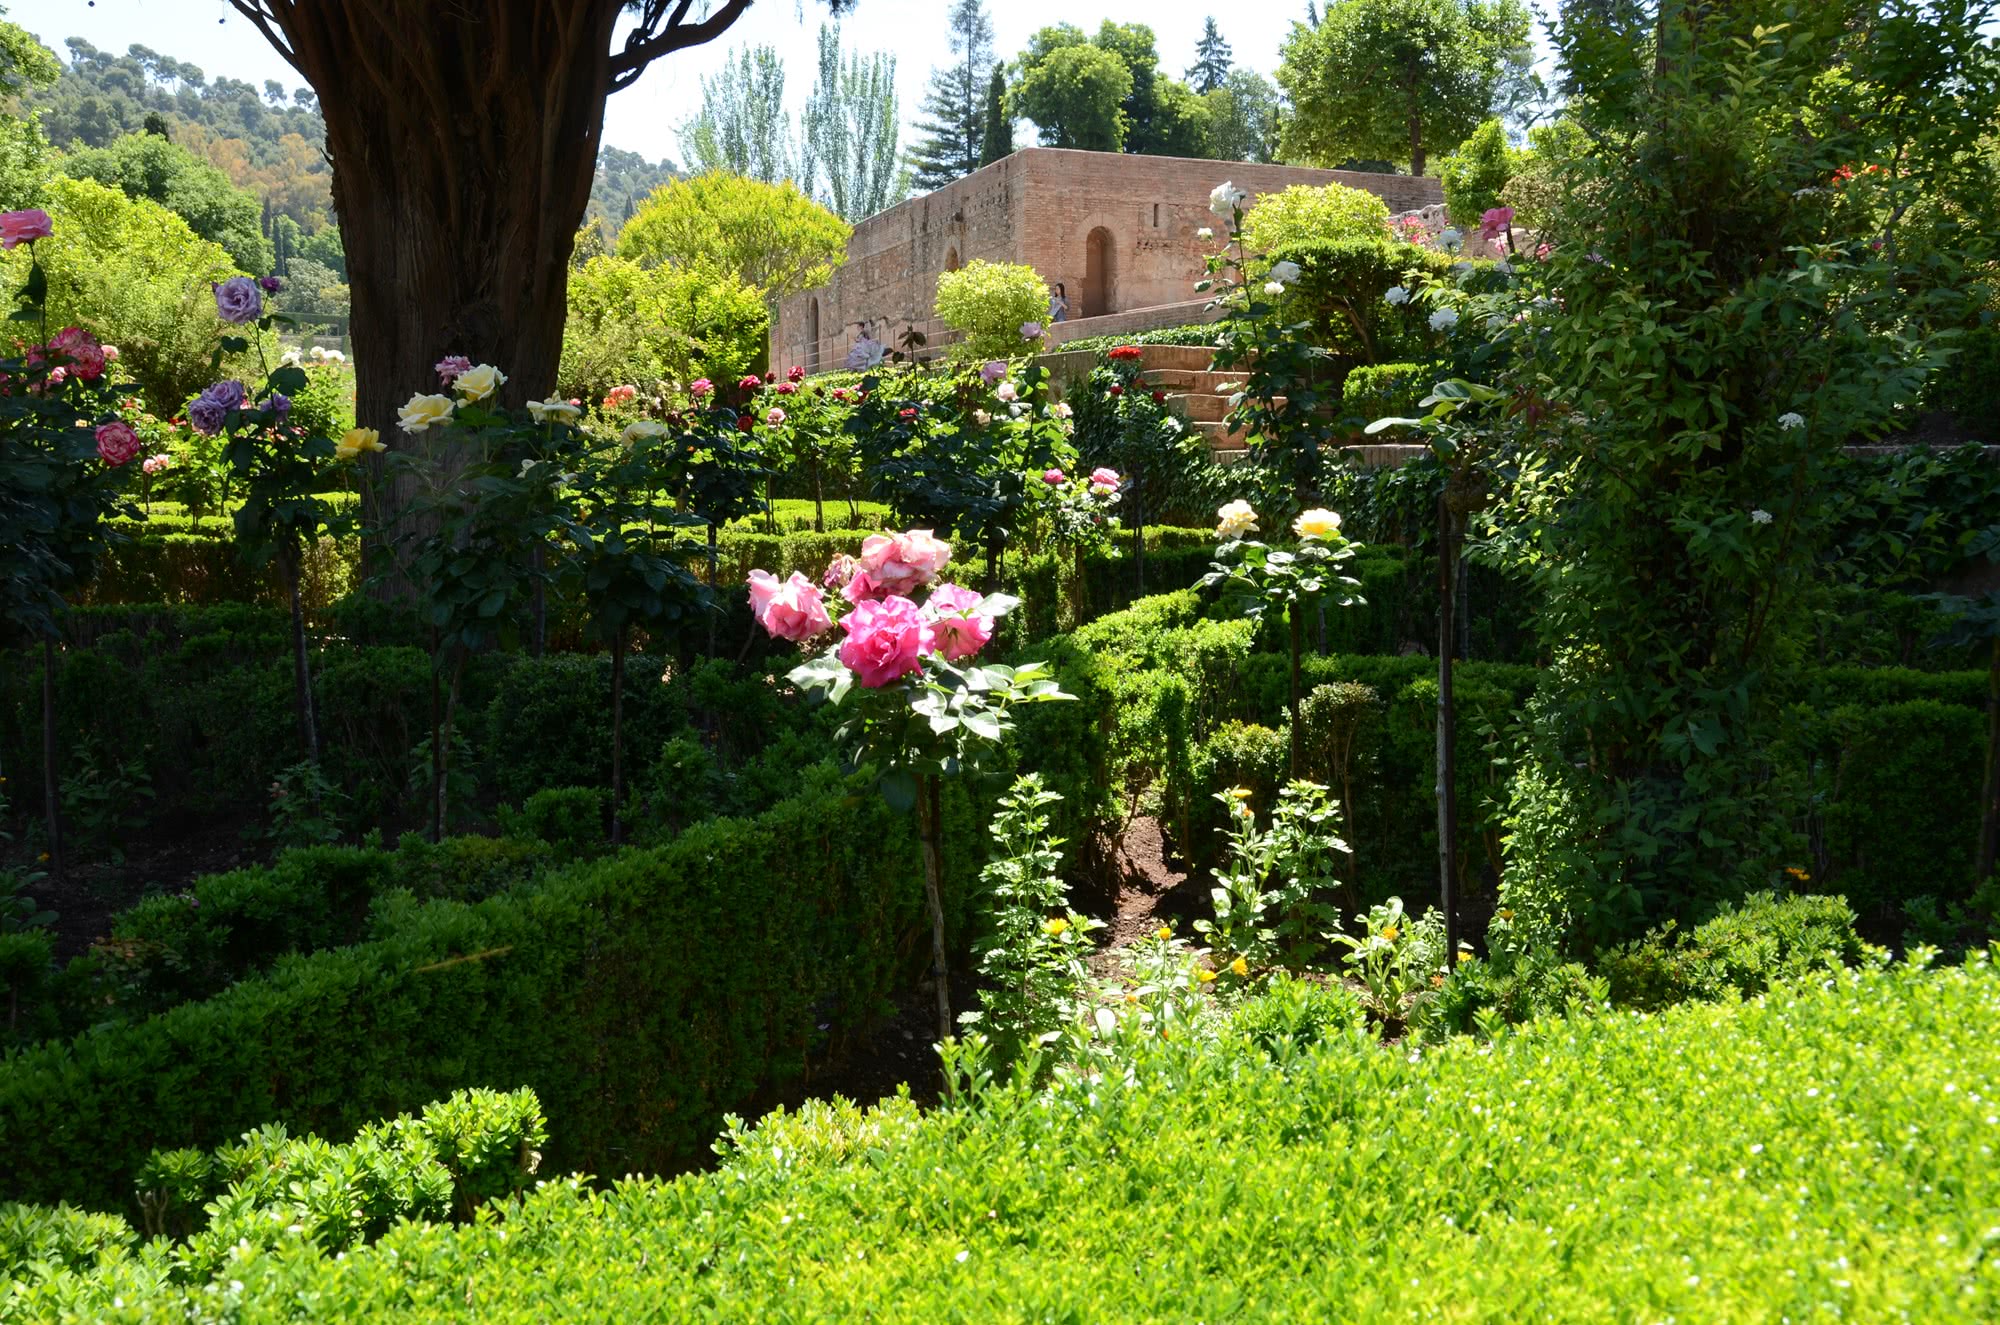 Los jardines de la Alhambra, una parte de la herencia árabe en España.